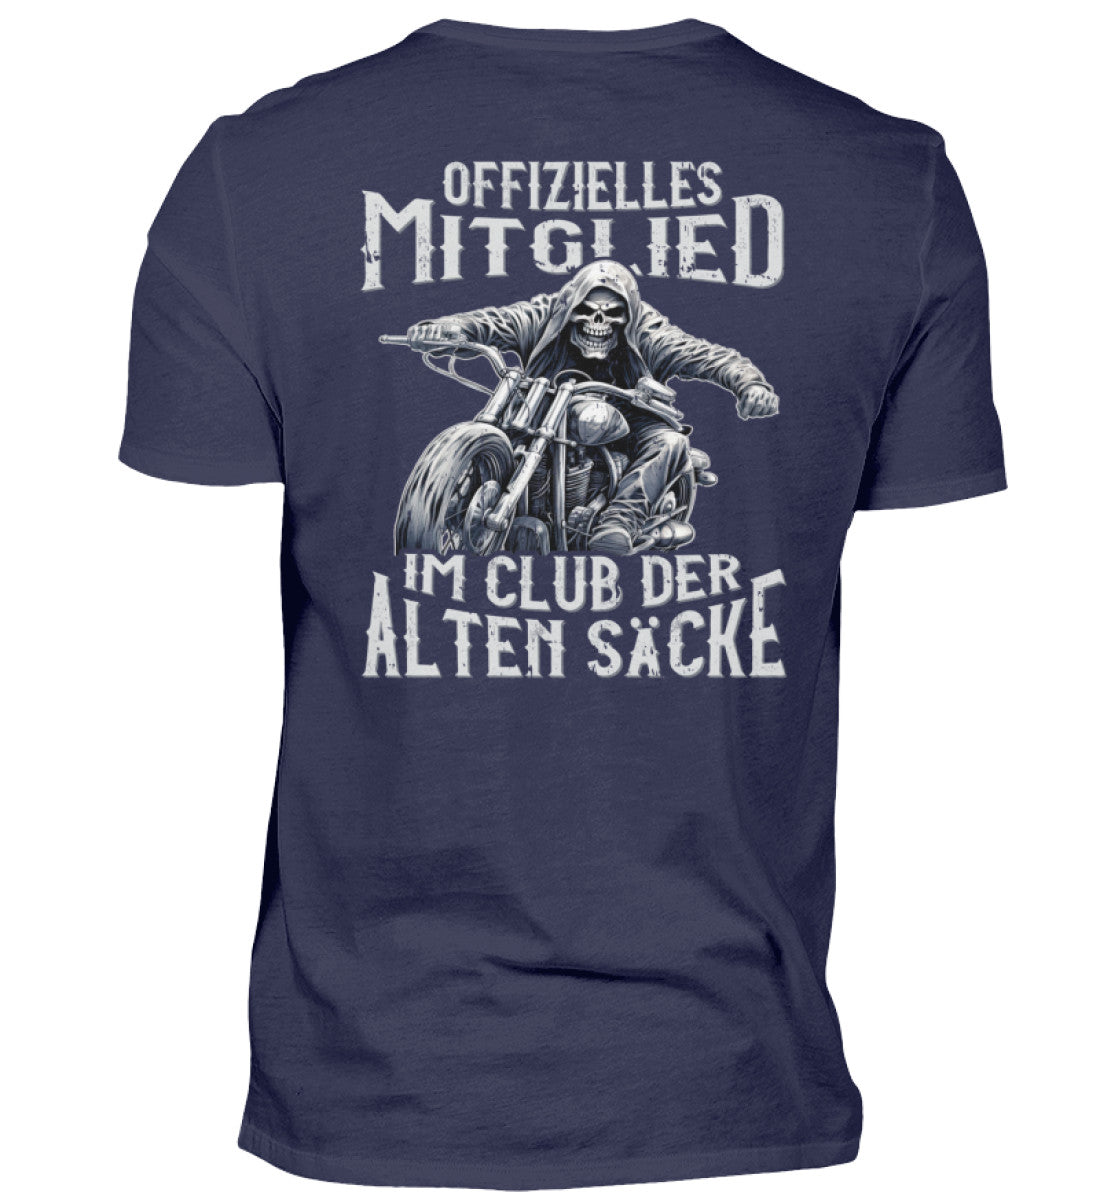 Ein Biker T-Shirt mit Back Print für Motorradfahrer von Wingbikers mit dem Aufdruck, Offizielles Mitglied im Club der alten Säcke, in navy blau. 